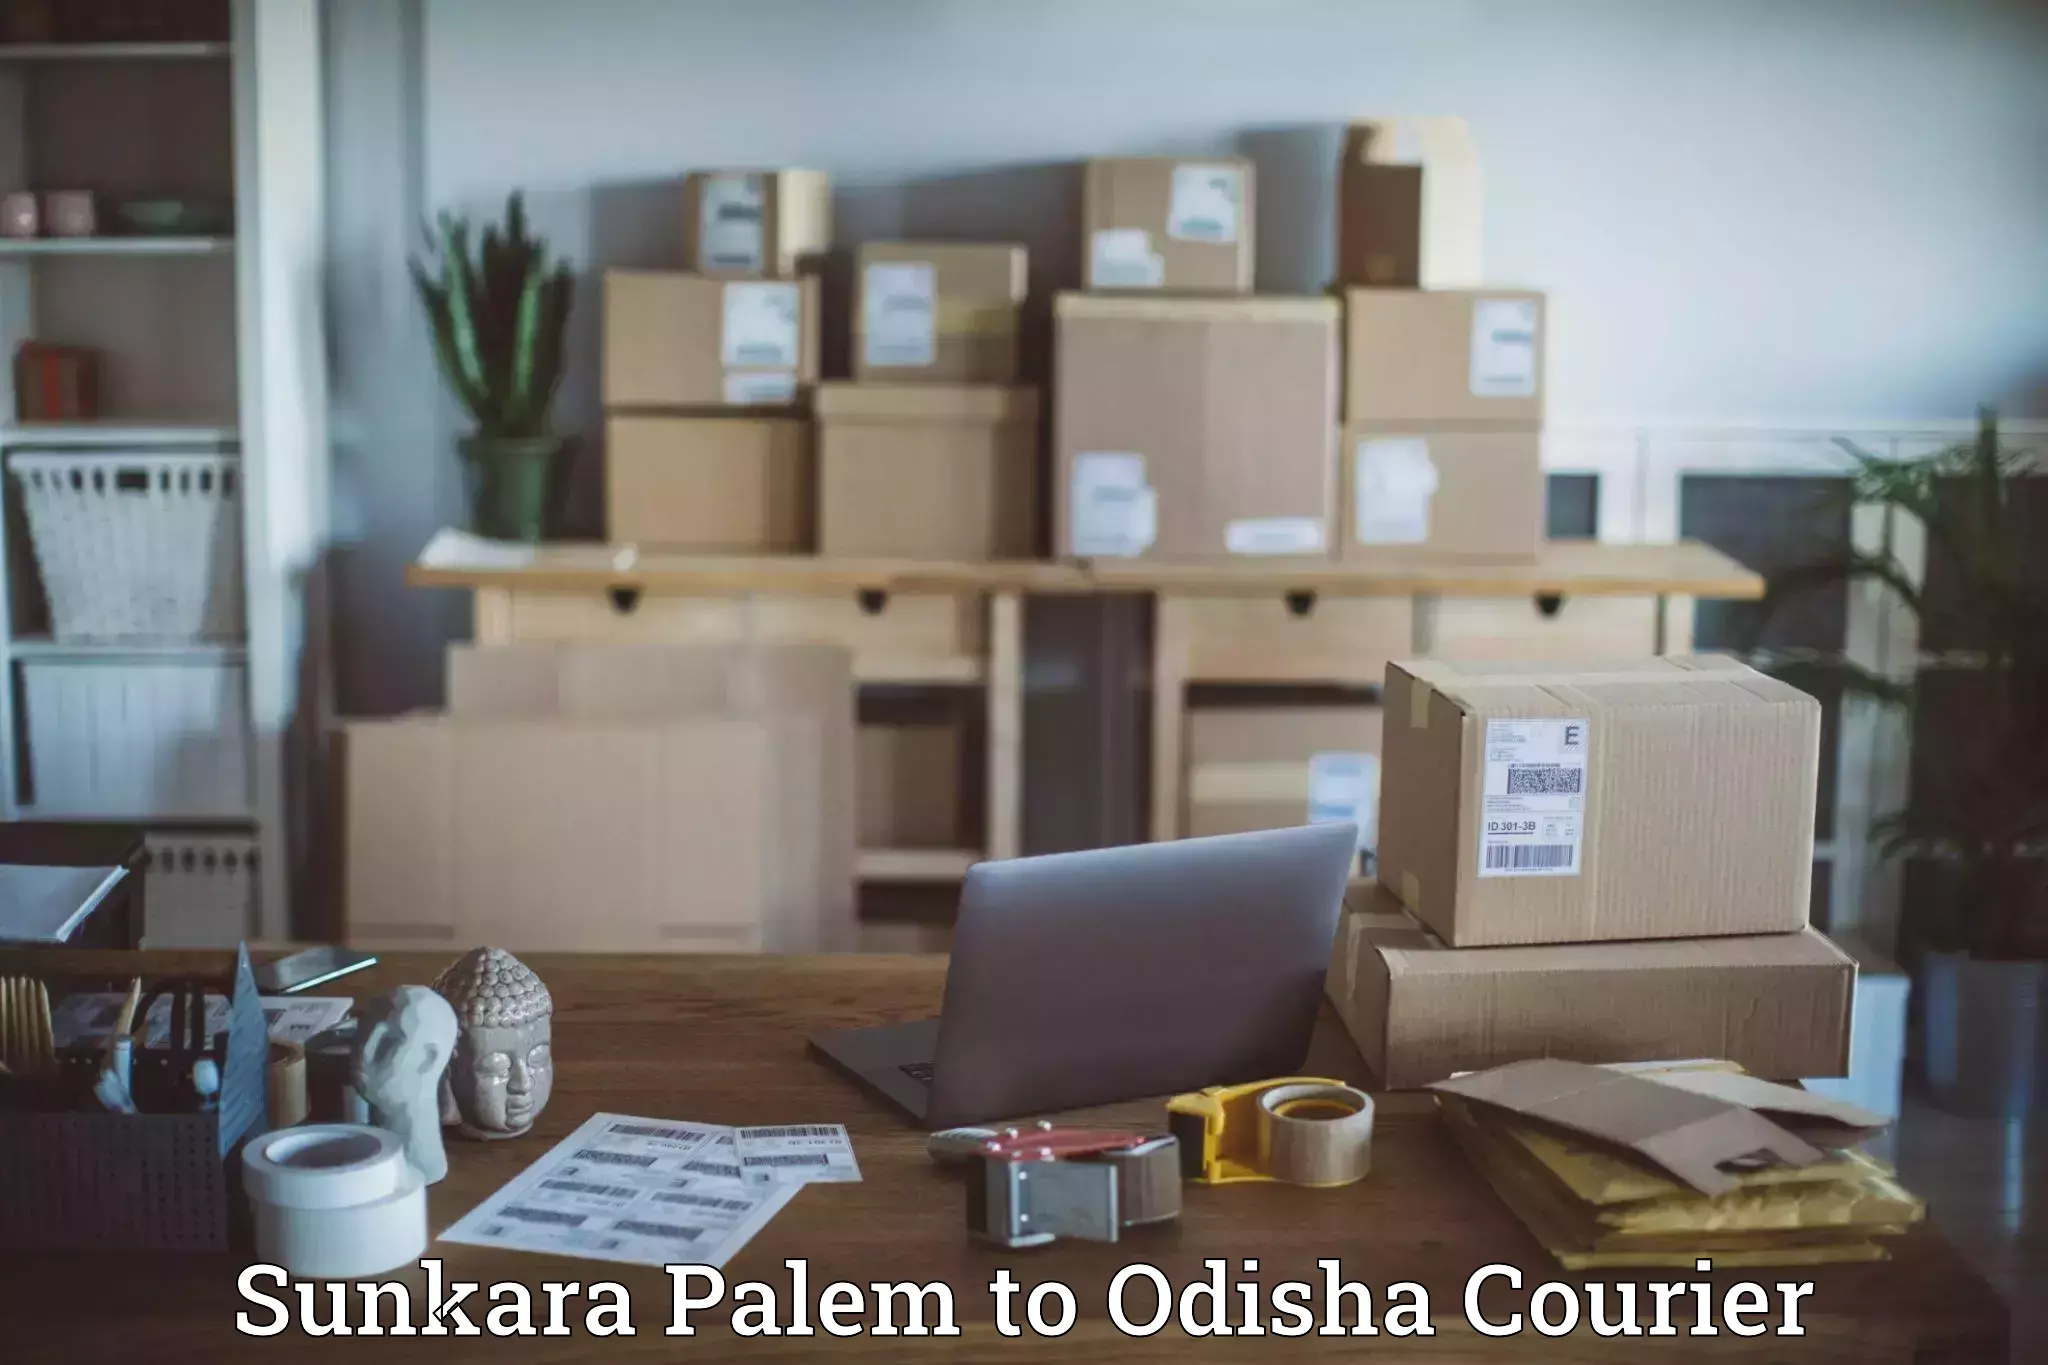 Nationwide delivery network Sunkara Palem to Bhanjanagar